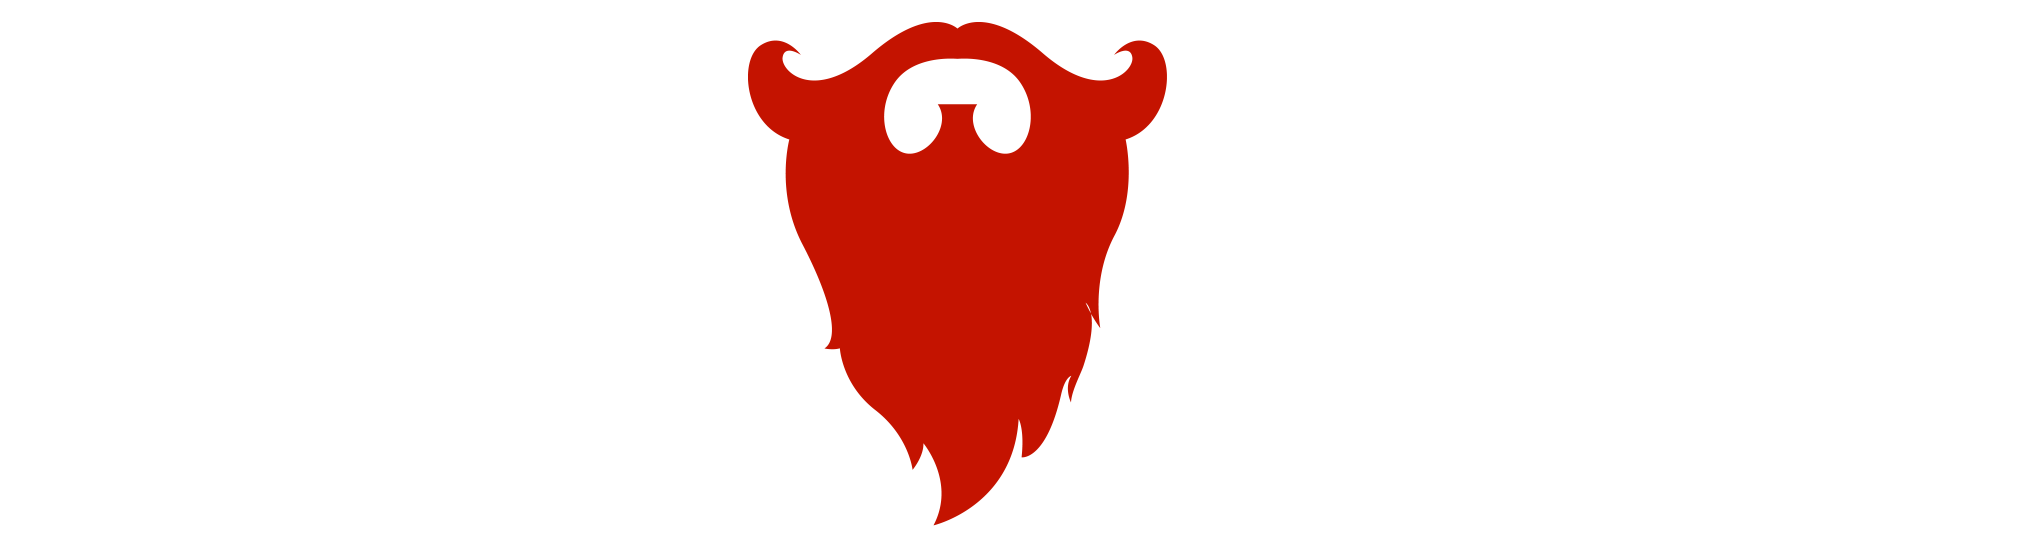 Beard Octane Help Center logo